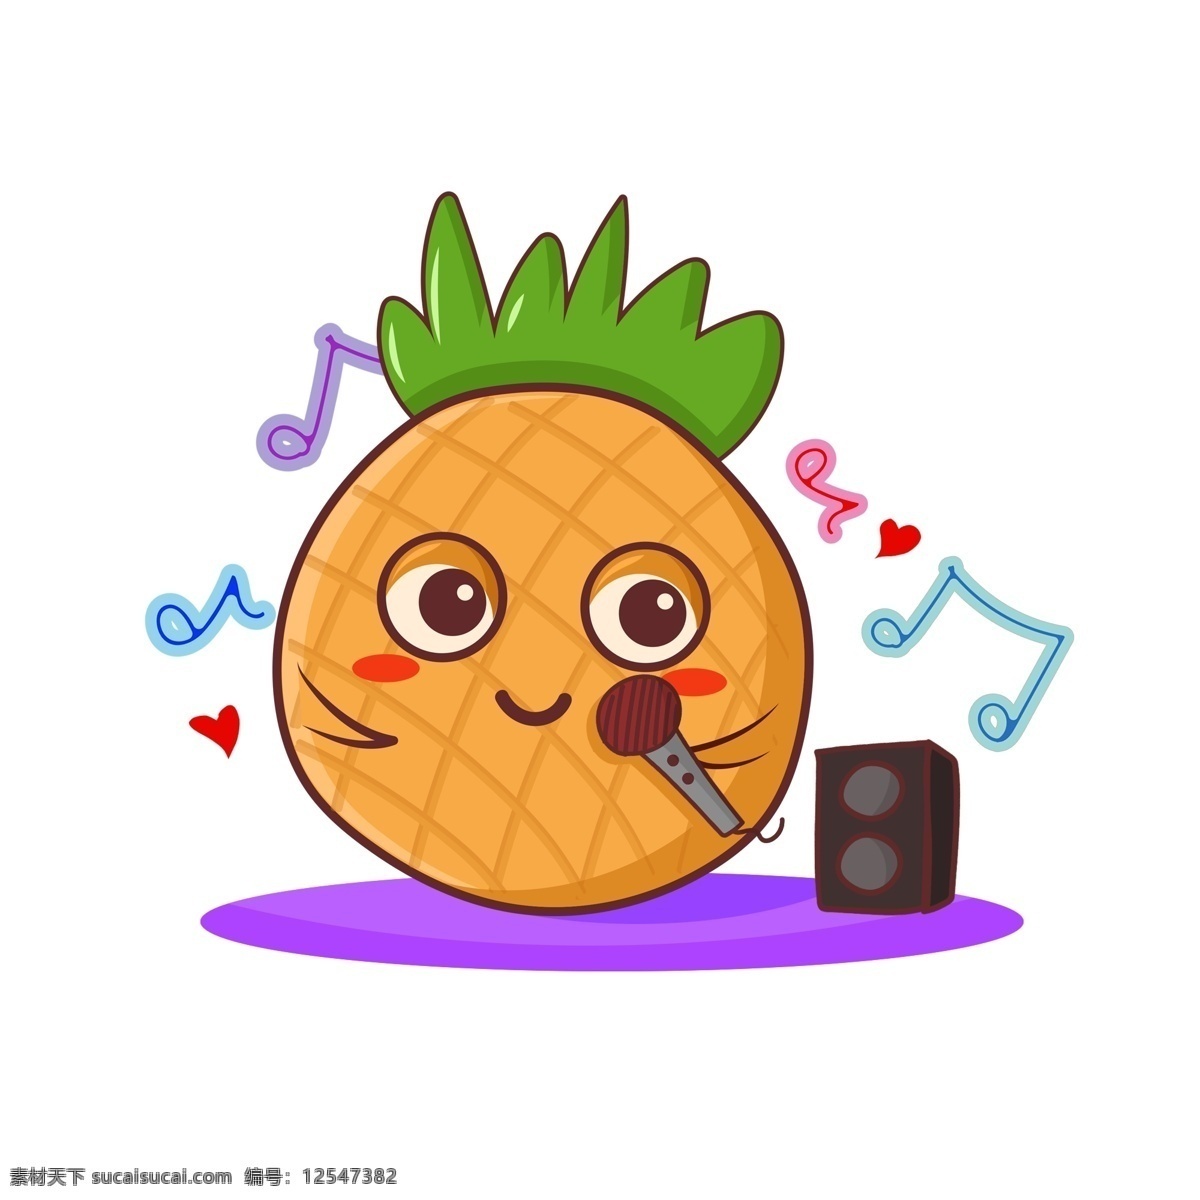 卡通 可爱 水果 拟人 笑脸 表情 元素 场景 夏天 蔬果 果汁 健康 减肥 绿色 漫画 插画 儿童 凤梨 菠萝